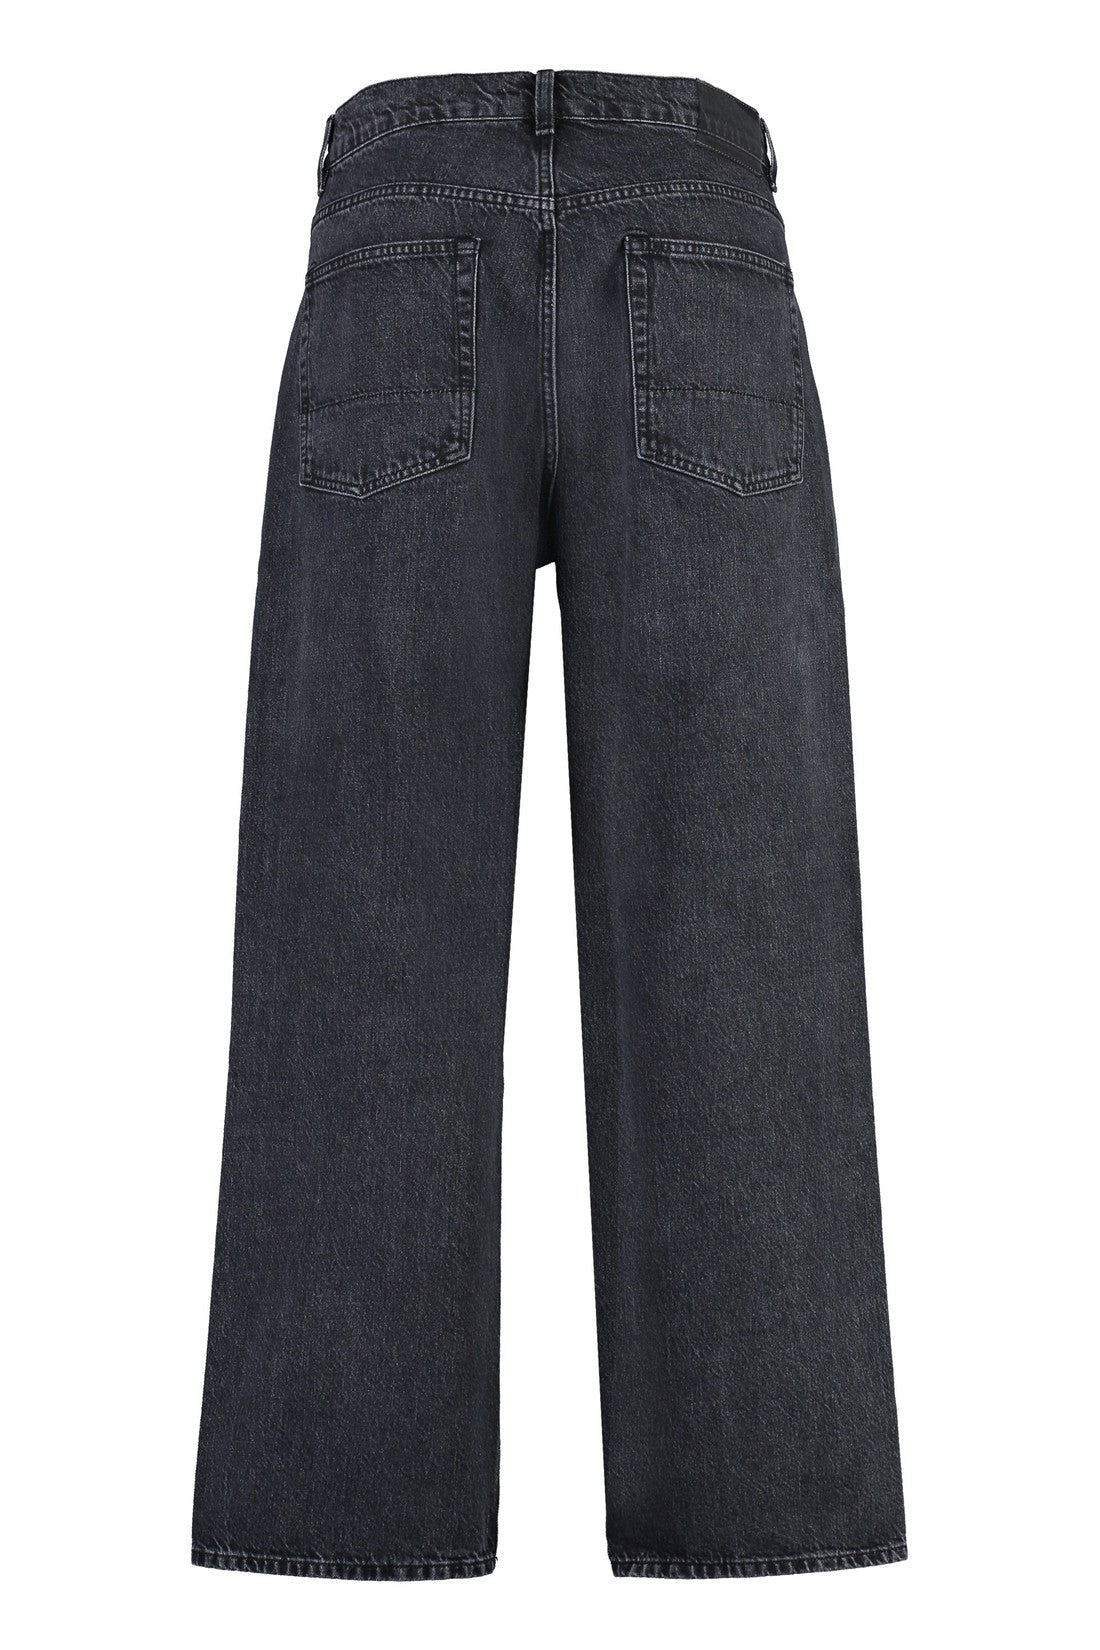 Our Legacy-OUTLET-SALE-Third Cut wide-leg jeans-ARCHIVIST